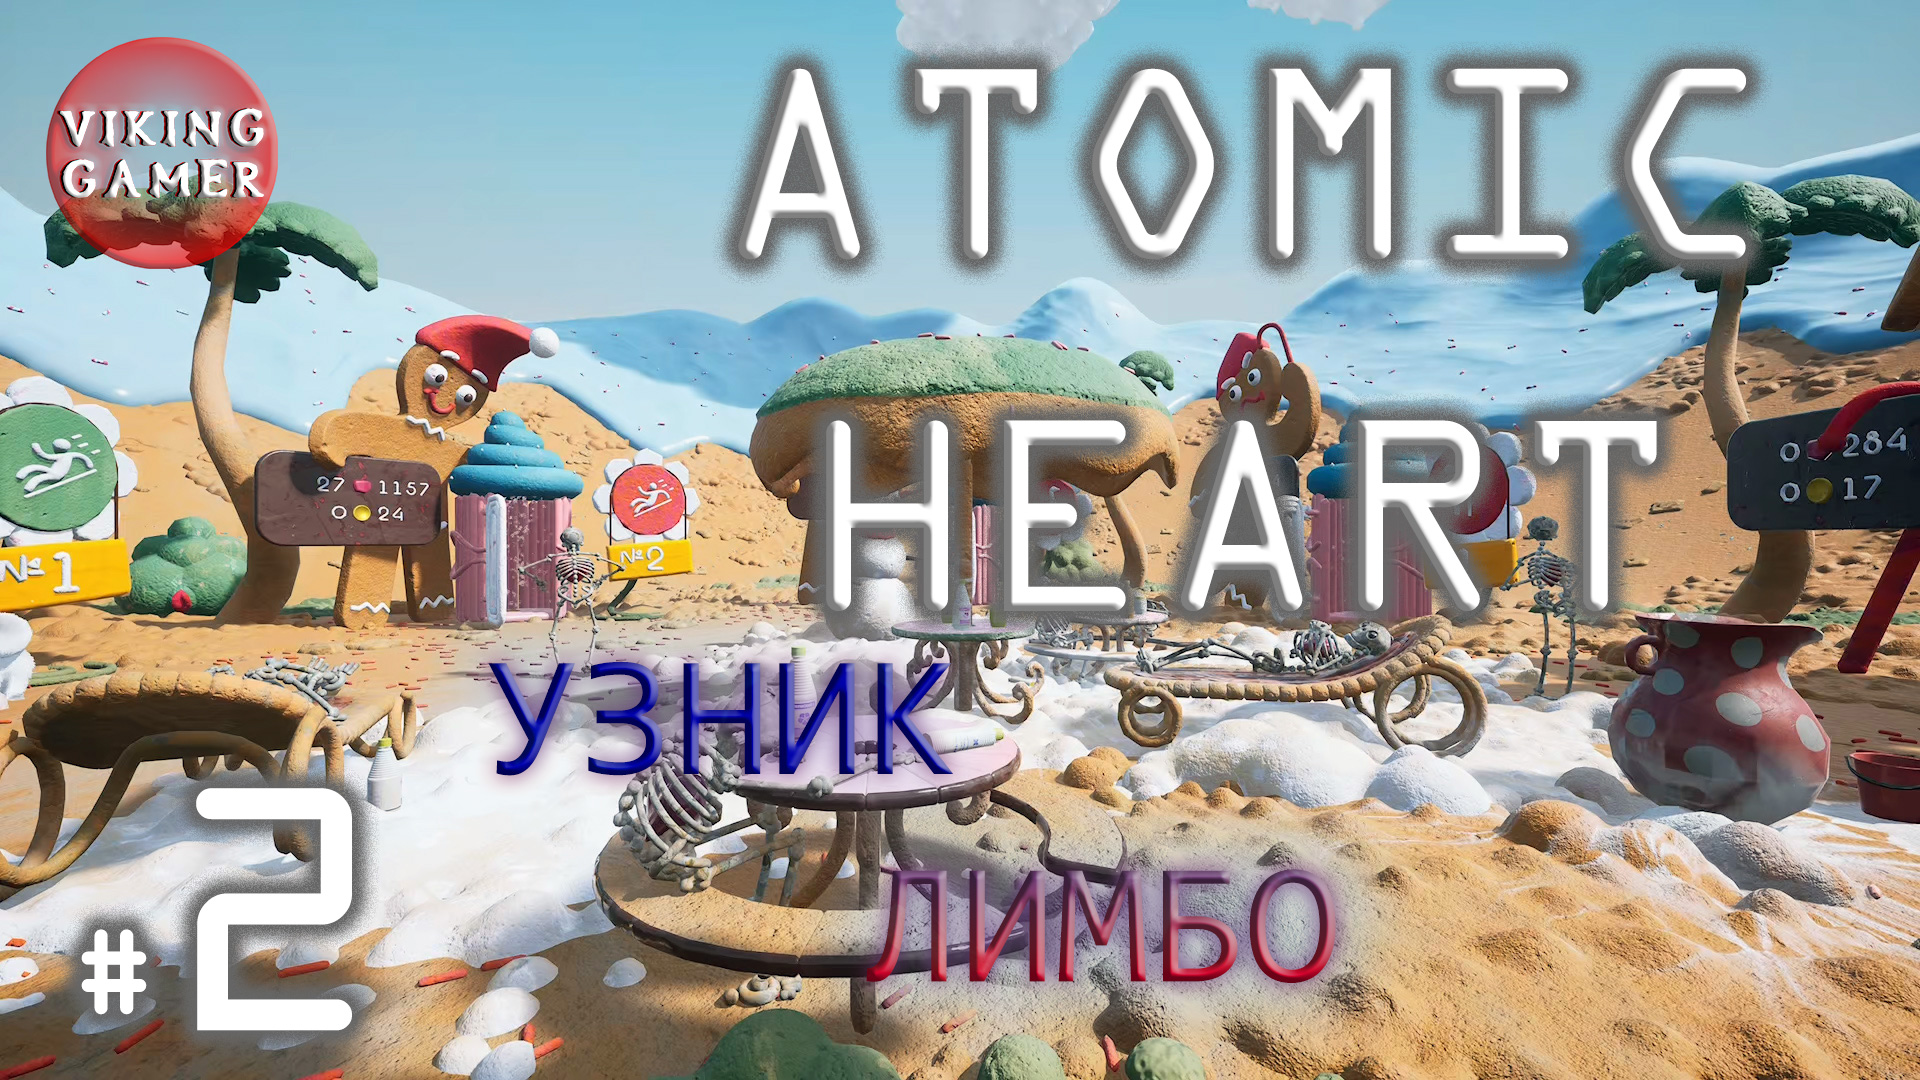 Атом 2Узник Лимбо   "Atomic Heart "  прохождение # 2.  DLC 2  Атомное сердце.  Теперь полезем в верх